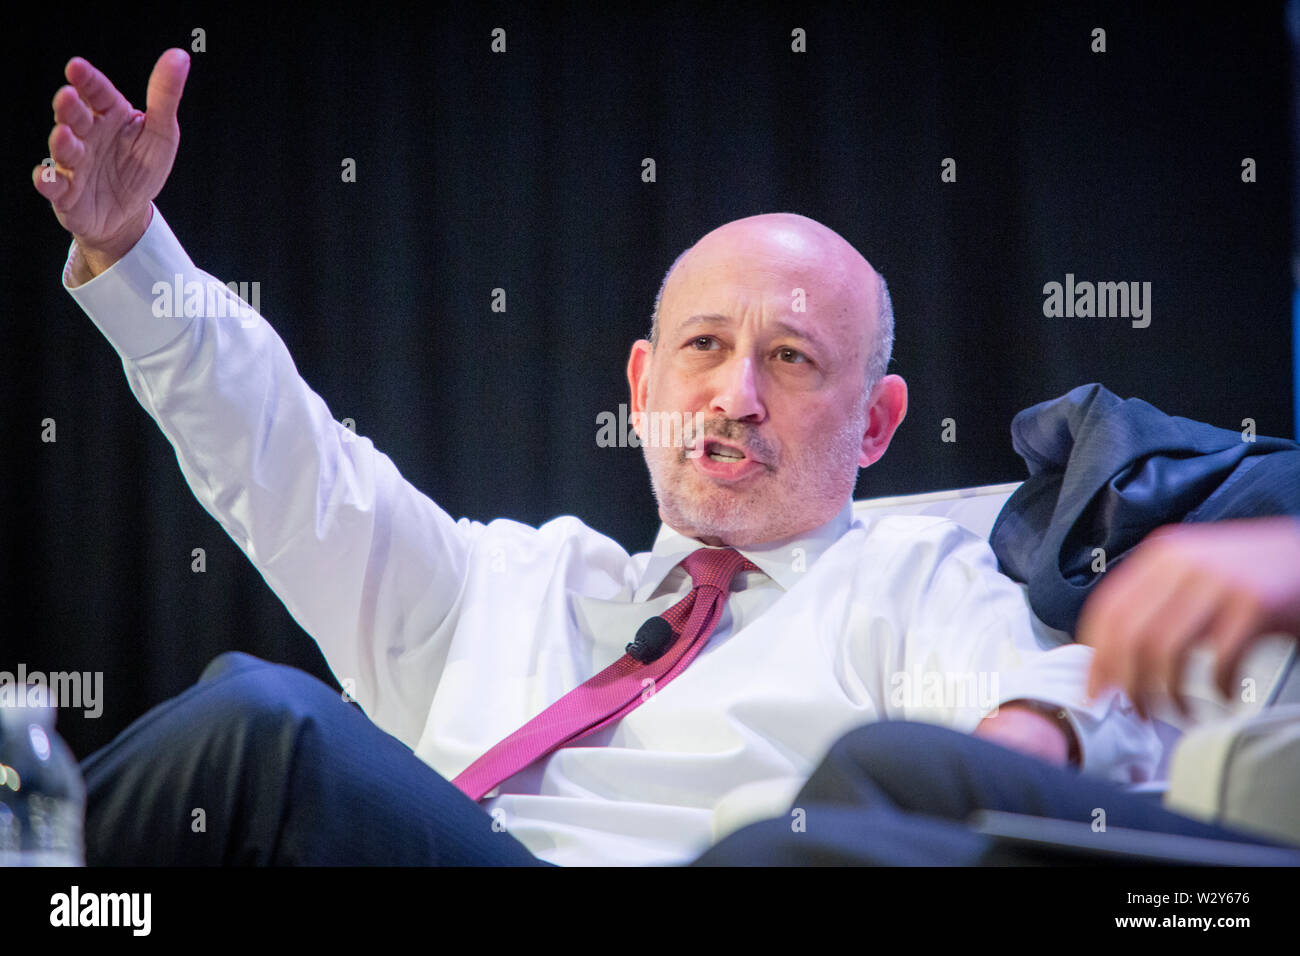 Président-directeur général de Goldman Sachs, Lloyd Blankfein, répond aux questions de l'animateur et de l'auditoire au cours d'un entretien à la réunion annuelle de 'sifma', l'industrie des valeurs mobilières et Marchés Financiers Association. Banque D'Images